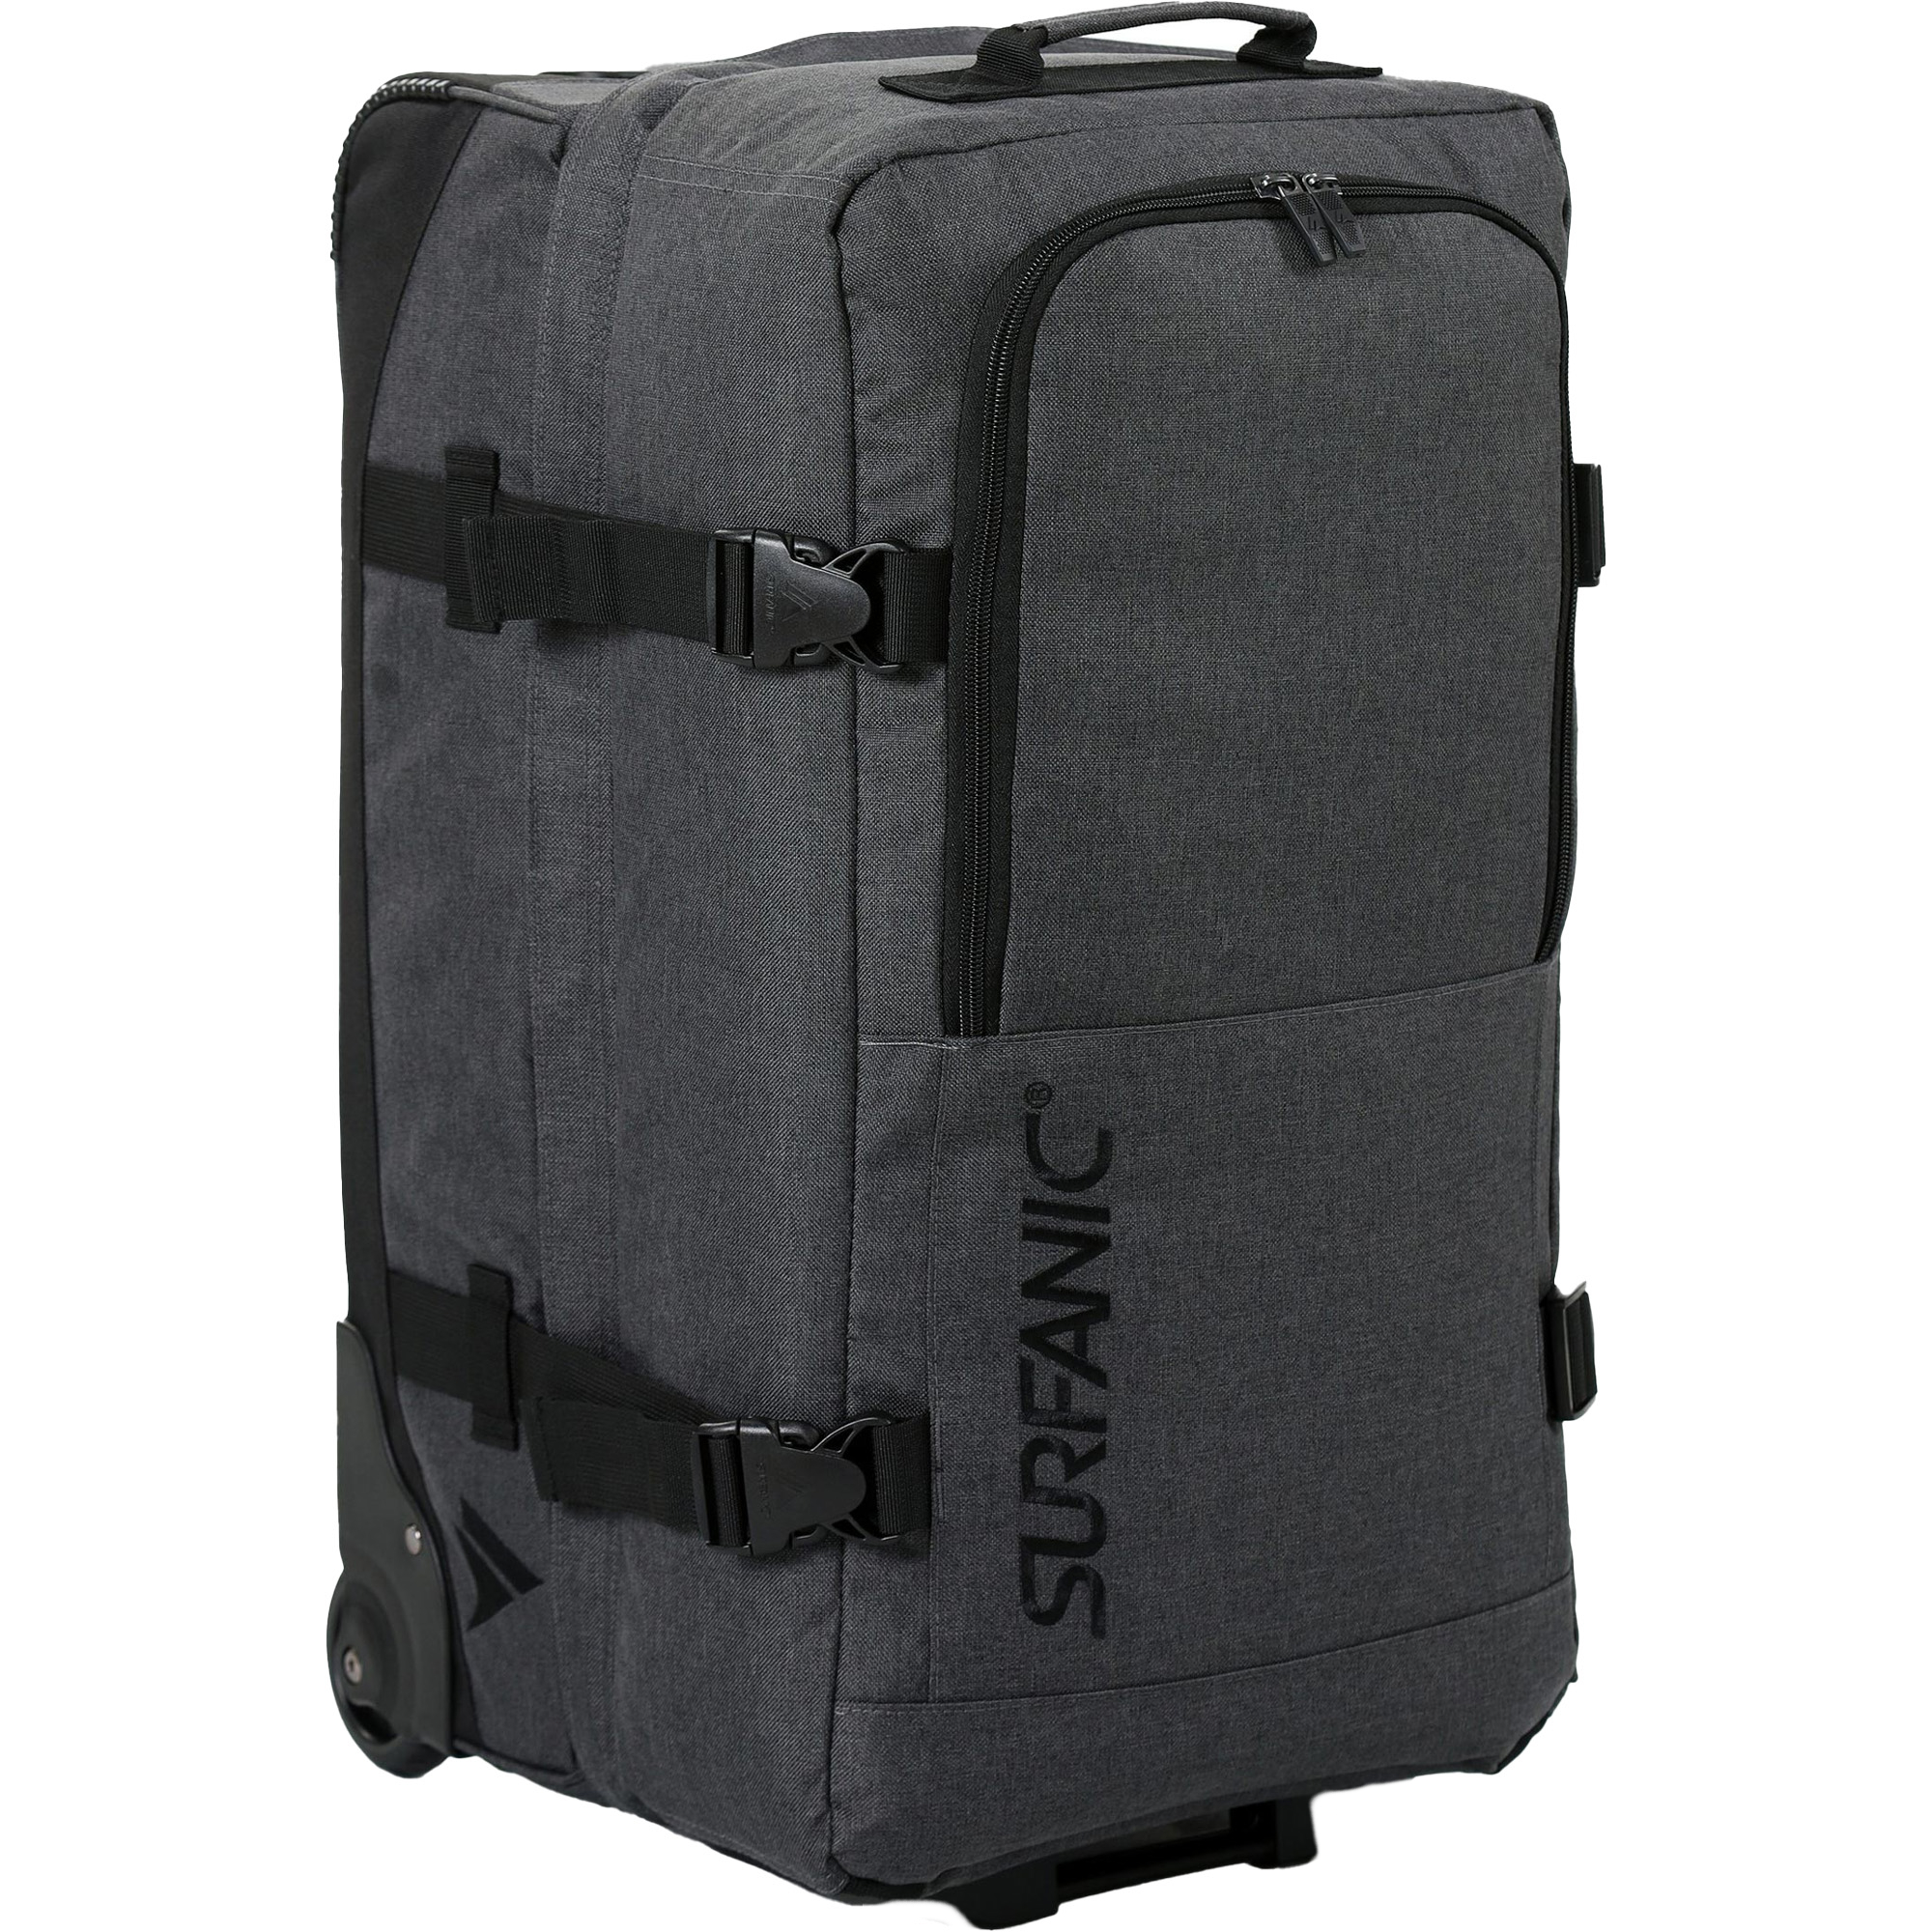 Surfanic Maxim 2.0 70 Wheeled Luggage Bag